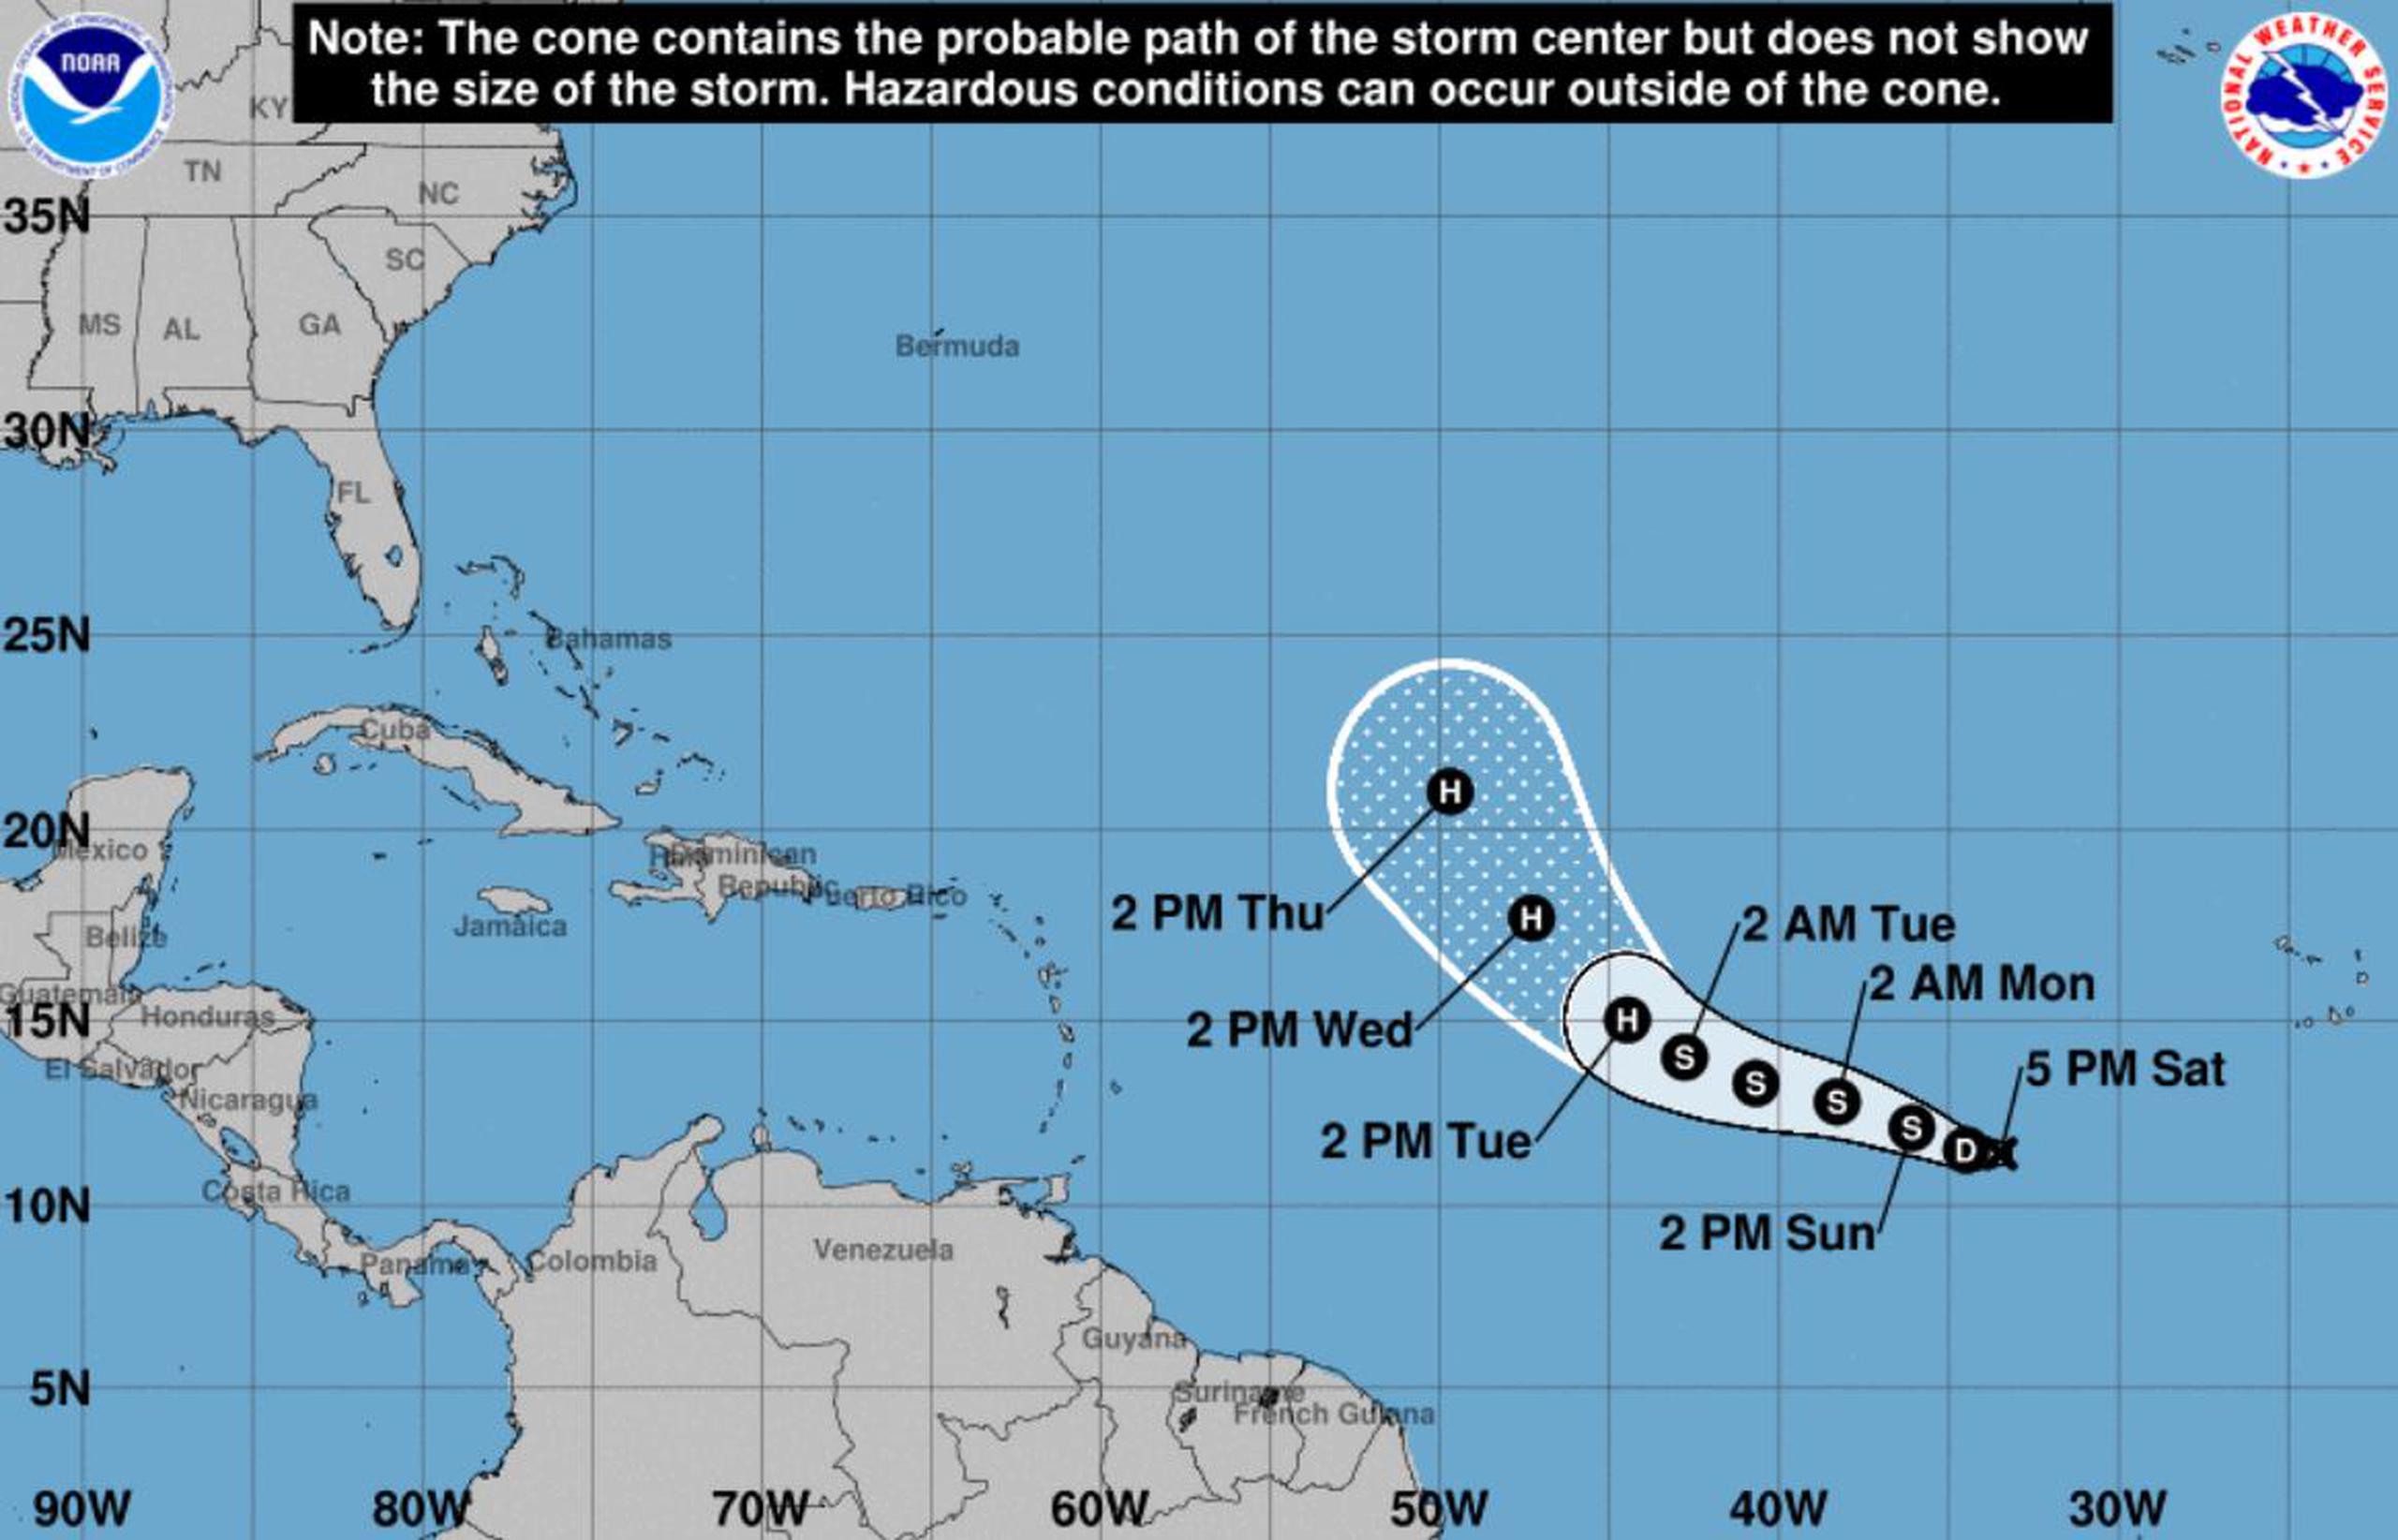 Posible trayectoria de la depresión tropical 20